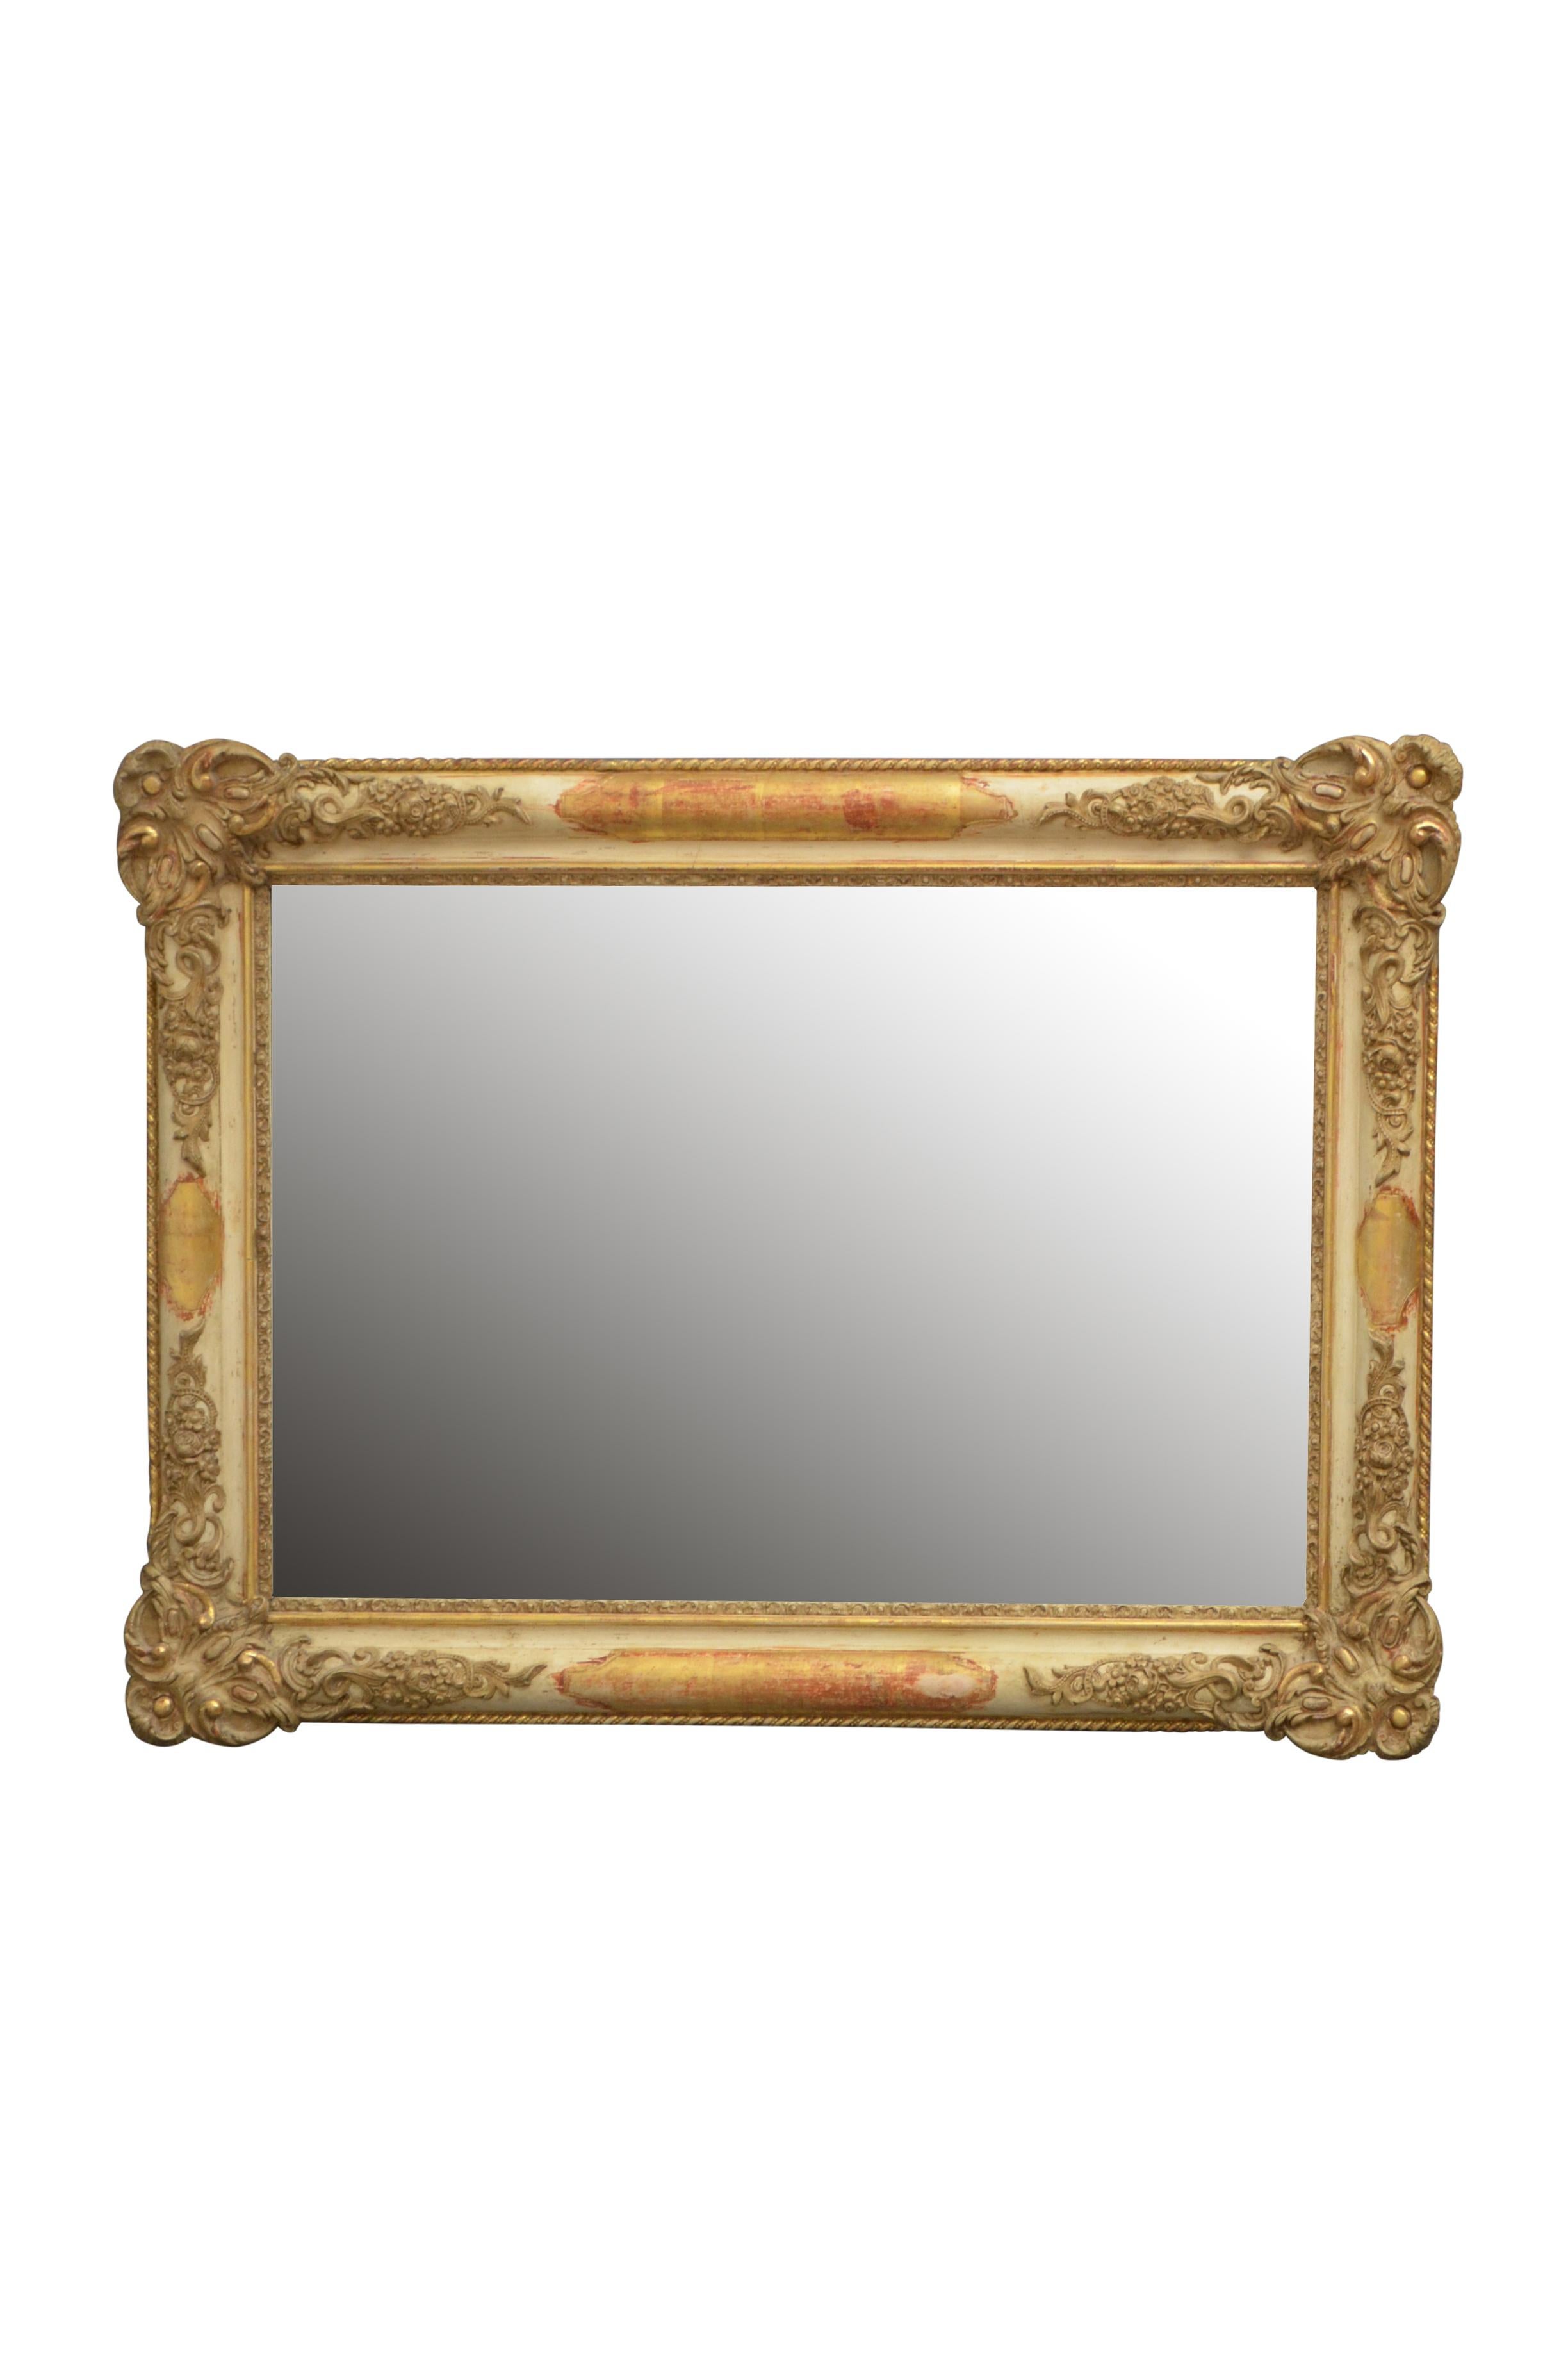 K0418 Miroir français du XIXème siècle, de forme versatile, pouvant être positionné en portrait ou en paysage, ayant une plaque de miroir originale avec quelques rousseurs dans un beau cadre sculpté et doré. Ce miroir doré antique conserve son verre